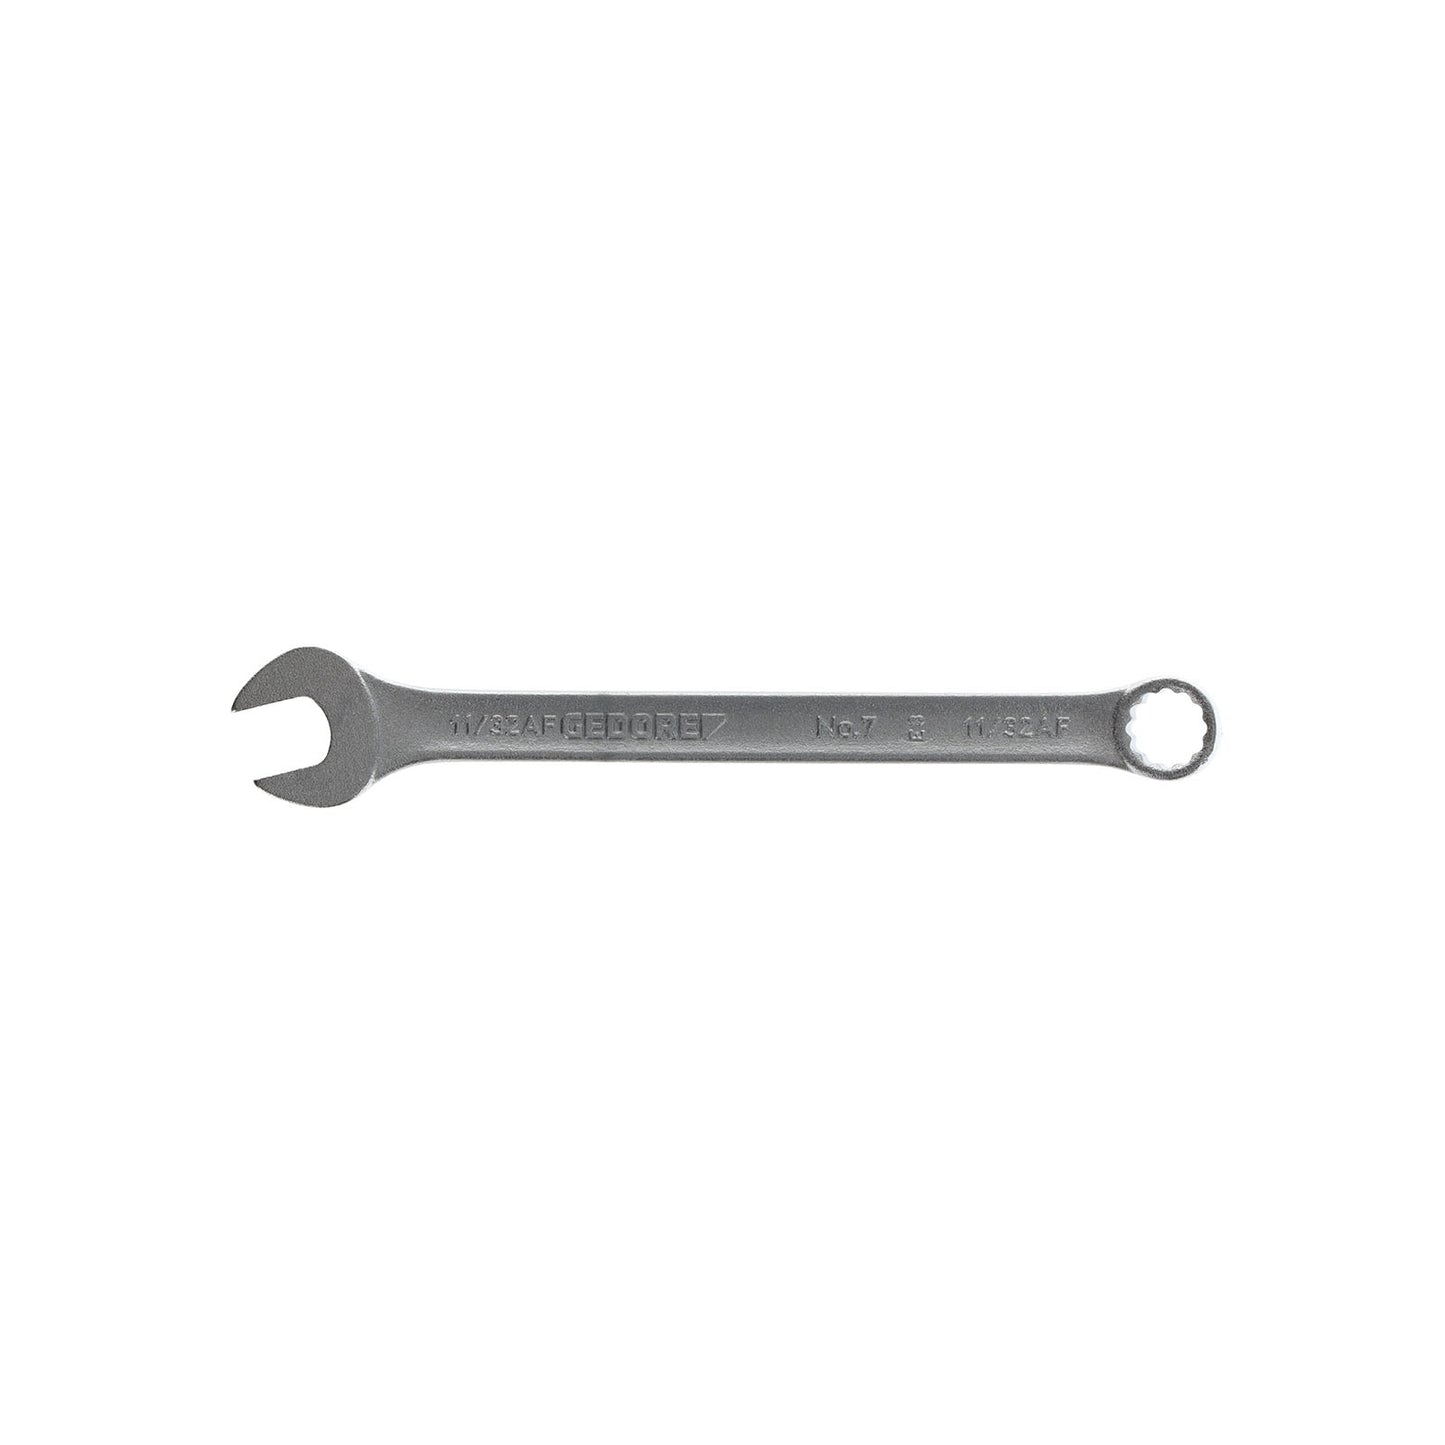 GEDORE 7 11/32AF - Combination Wrench, 11/32AF (6098970)